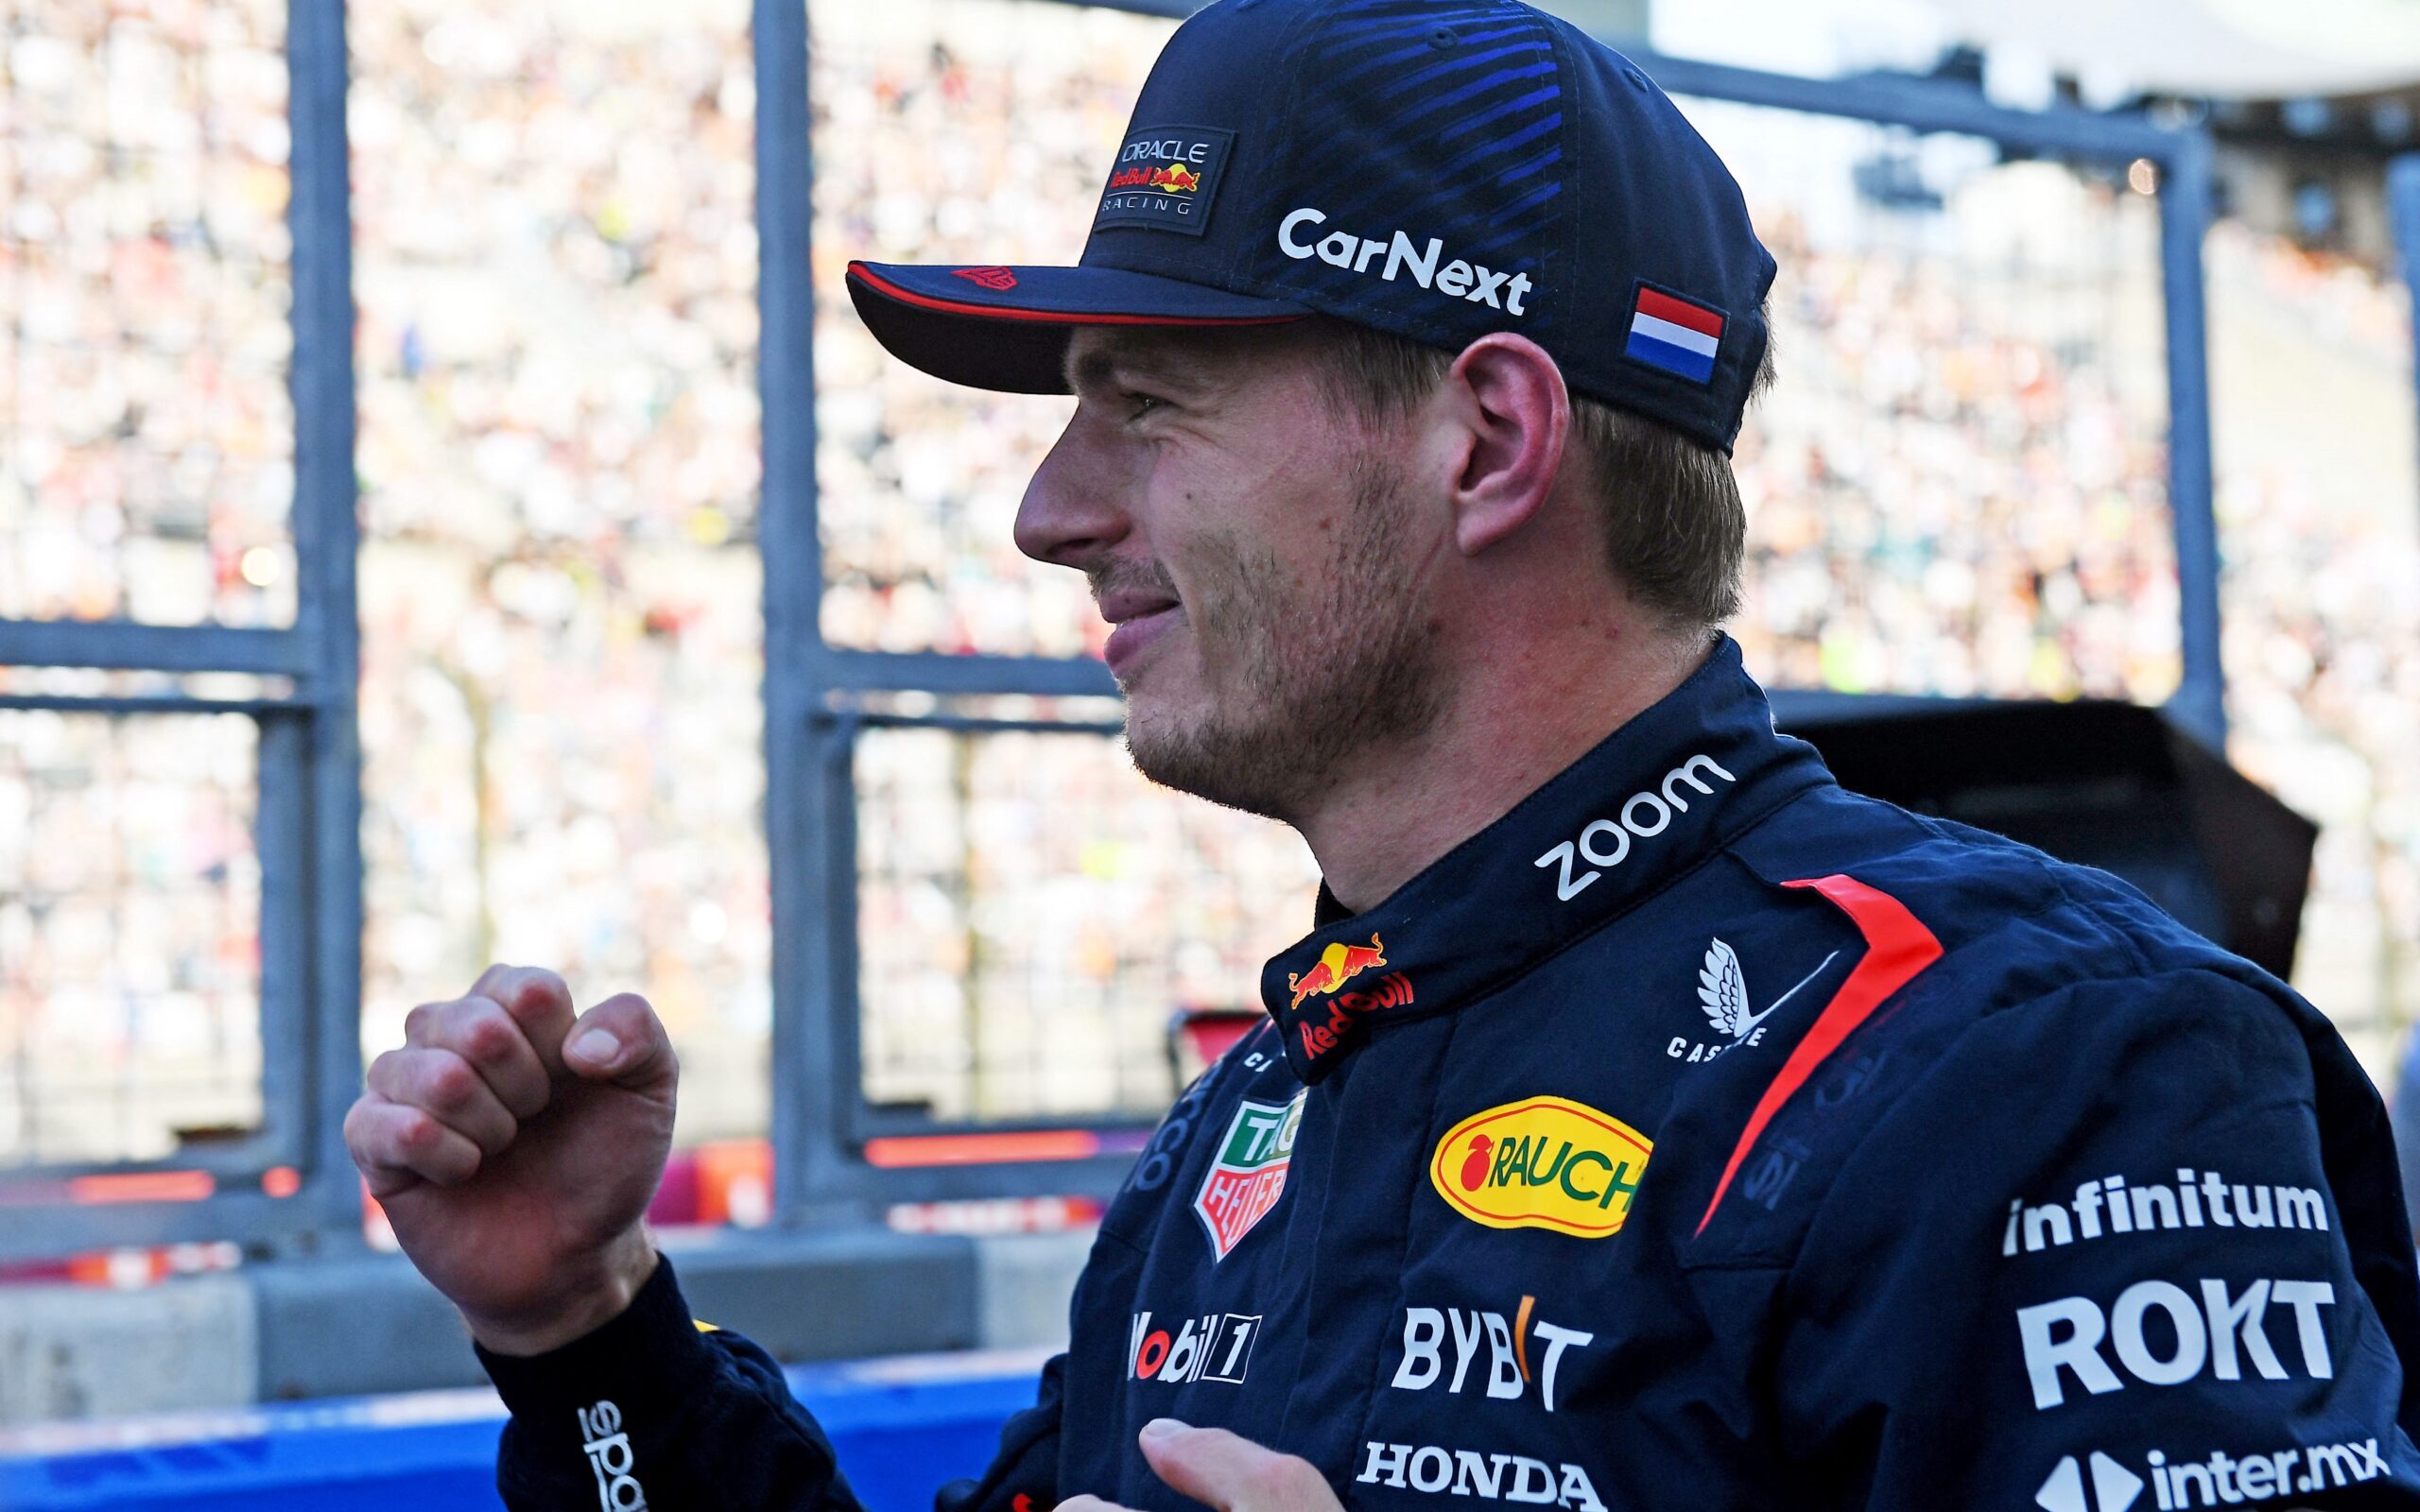 Fórmula 1: Verstappen volta à 'normalidade' e domina treinos livres no Japão  - Motores - SAPO Desporto